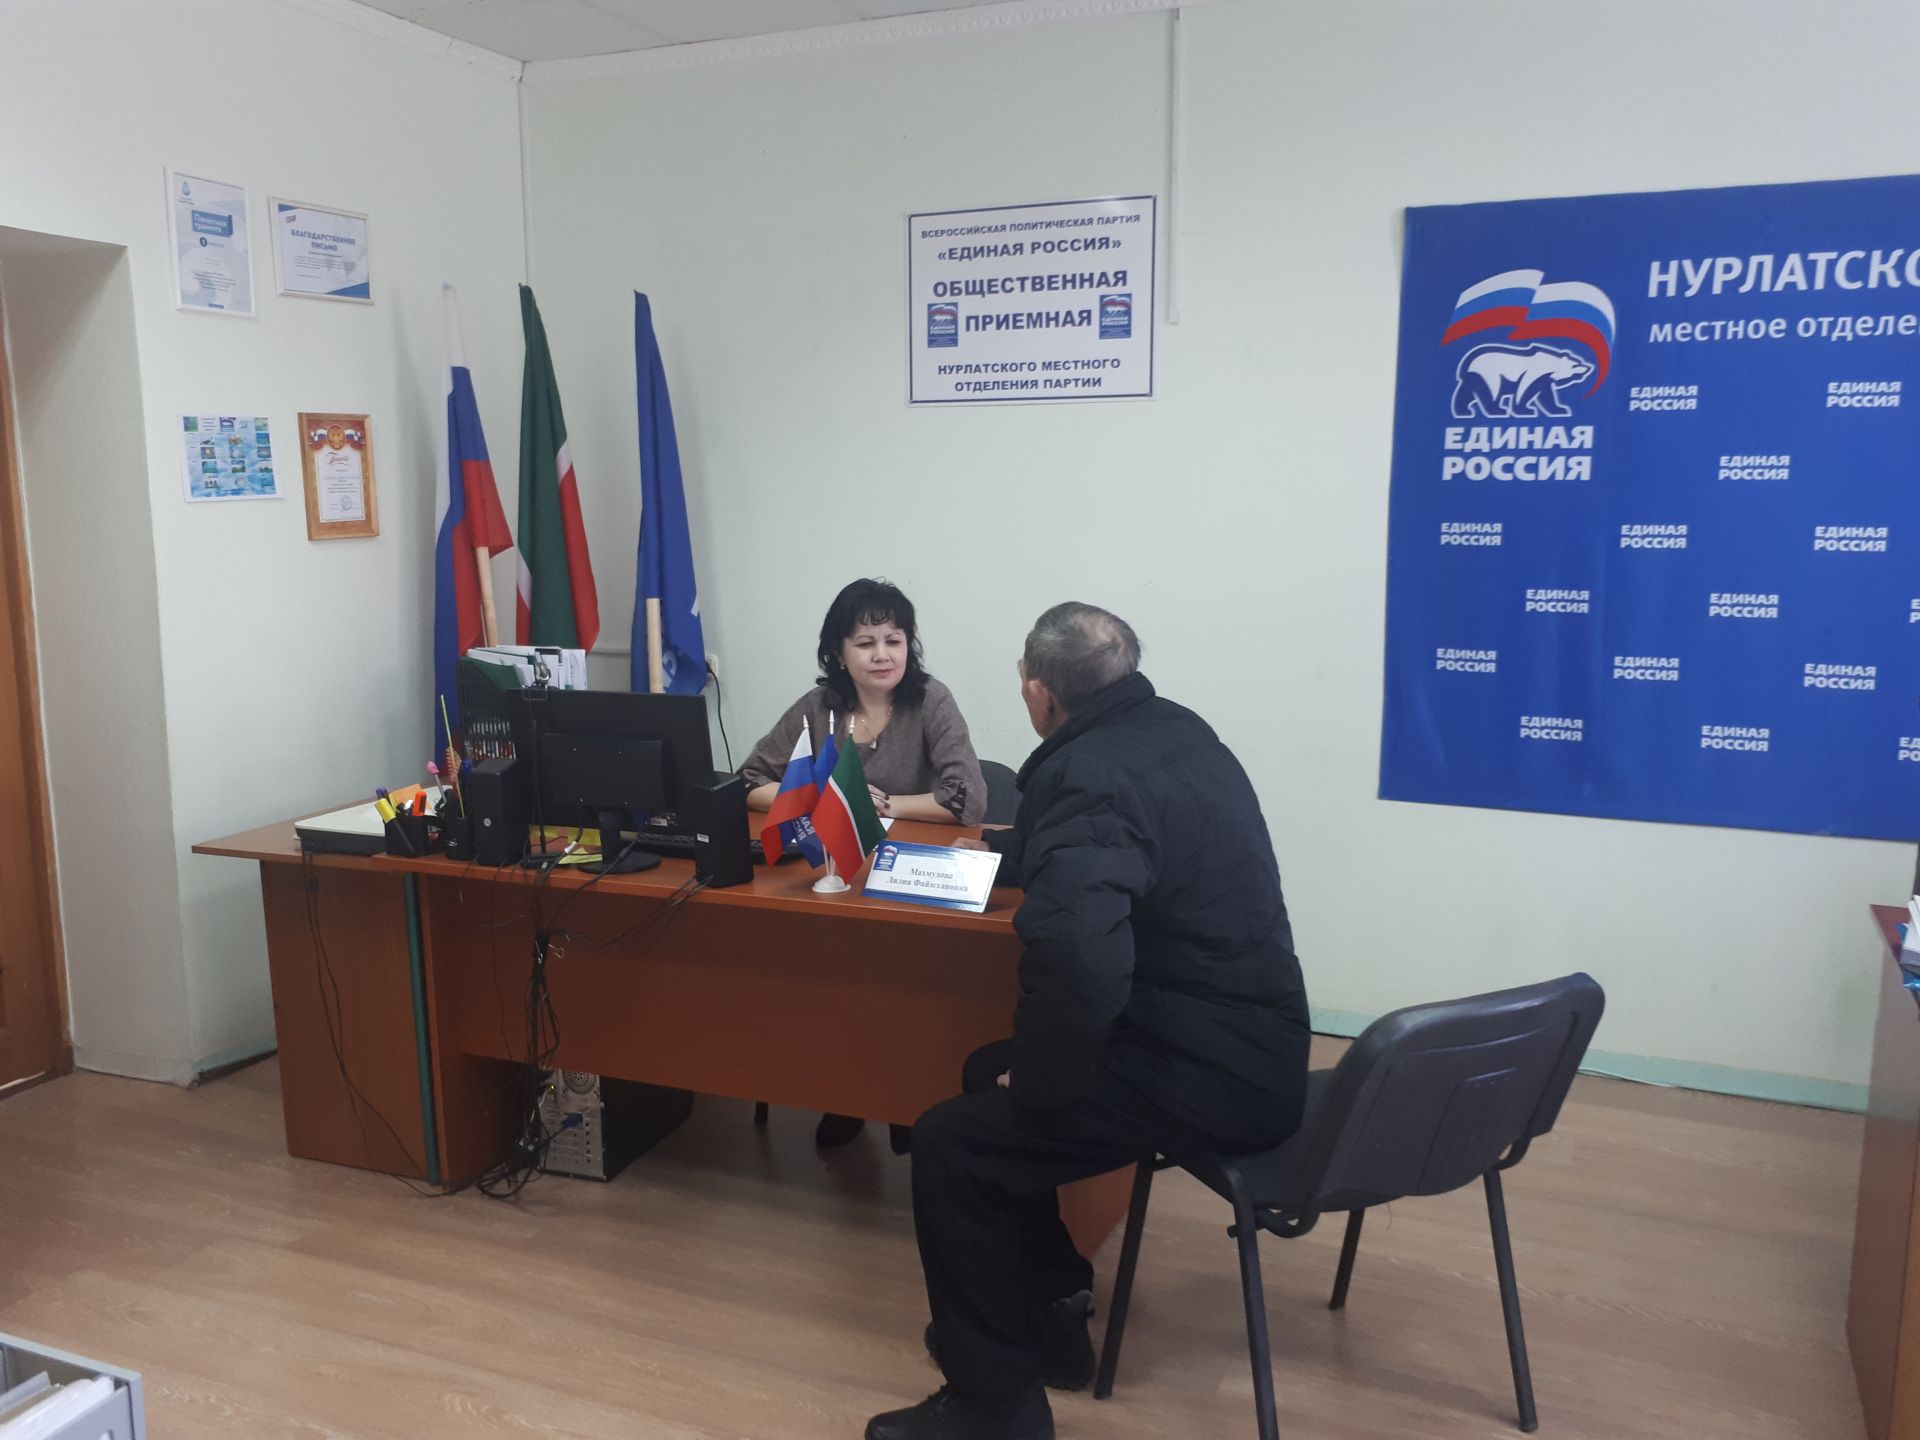 Нурлатцы получили бесплатную юридическую помощь в общественной приемной партии «Единая Россия»